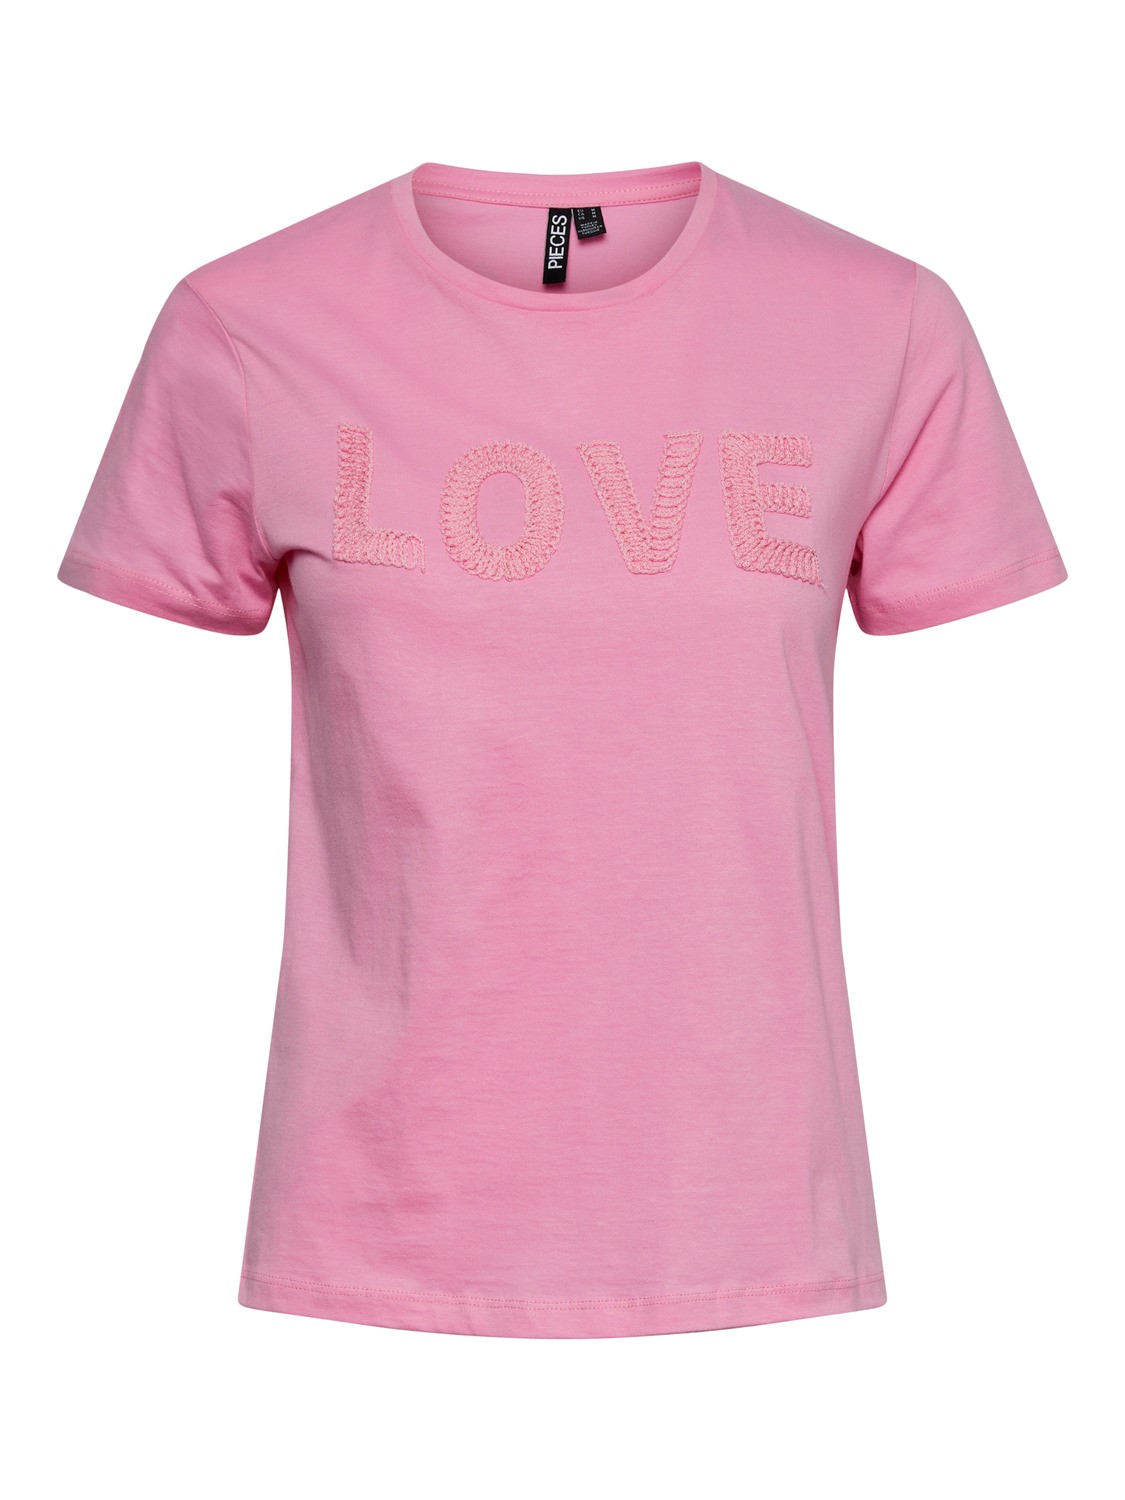 Camiseta Love rosa